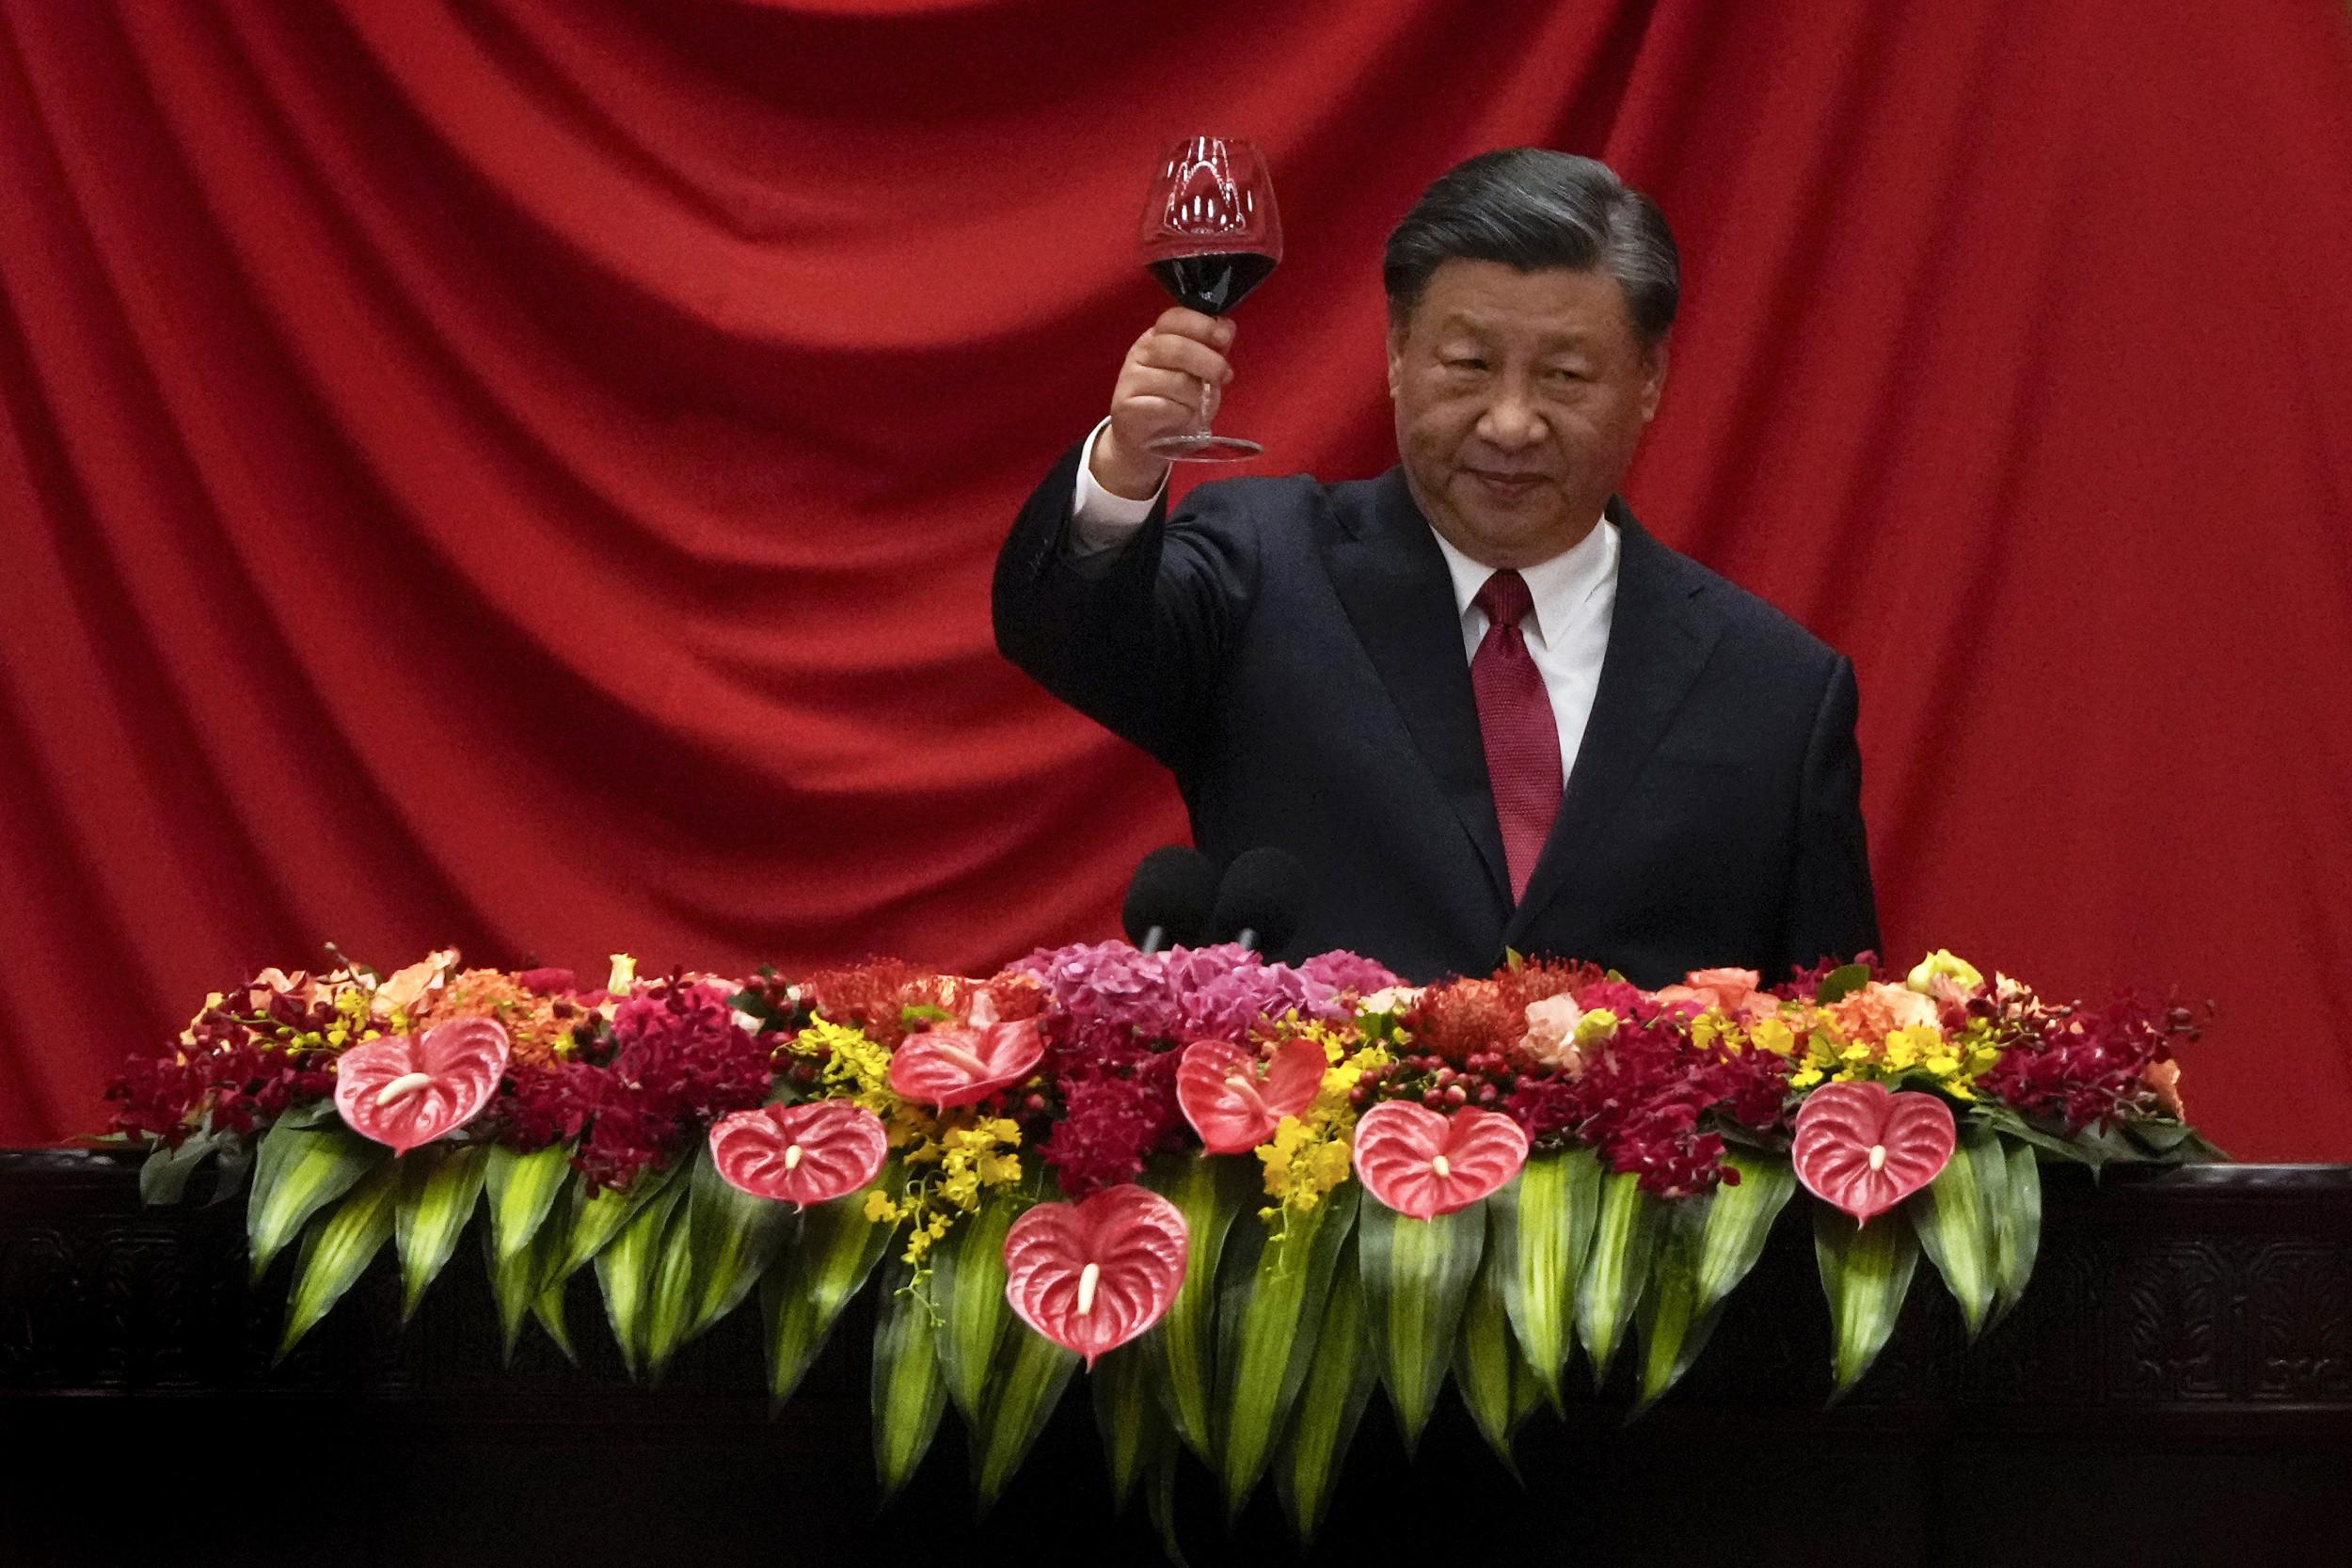 Xi Jinping raising a glass